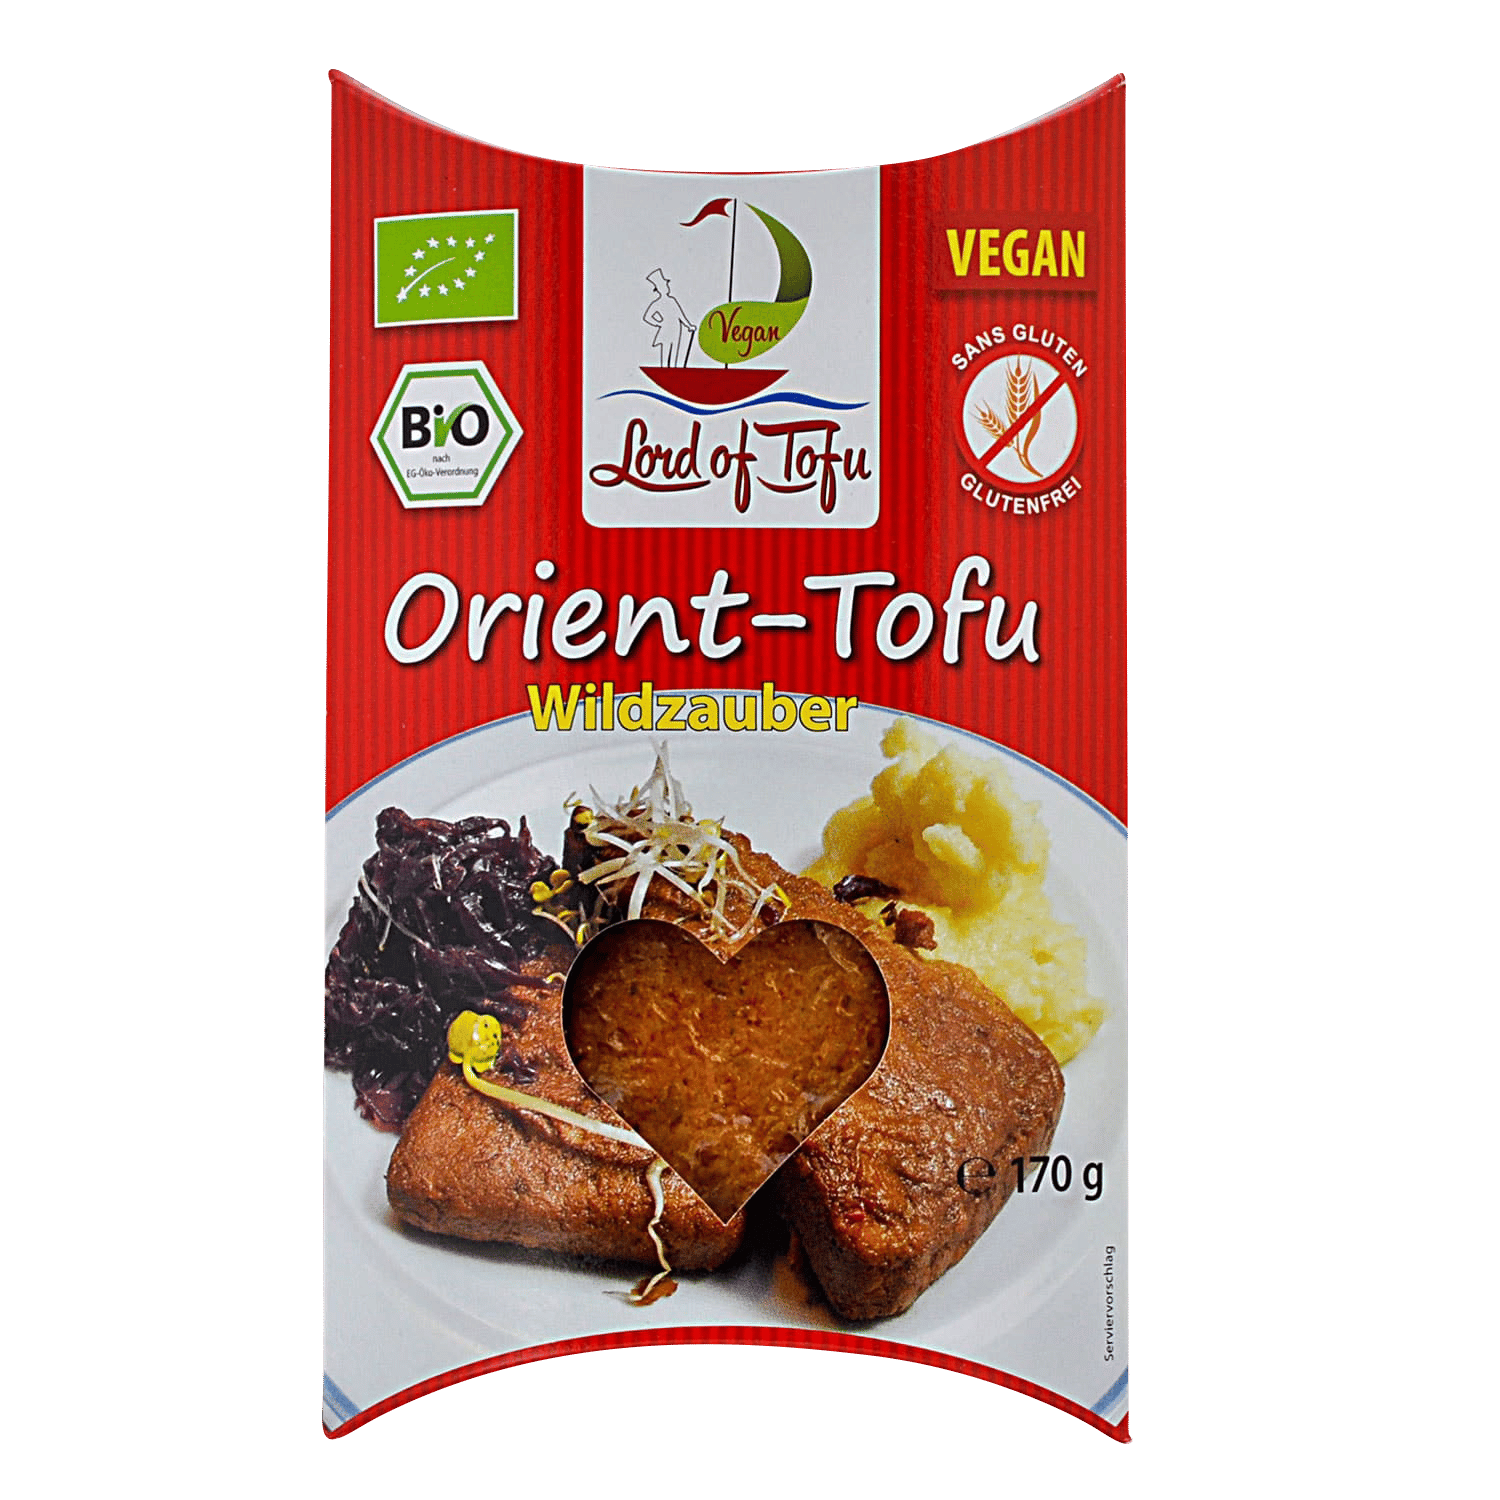 Orient-Tofu Wildzauber, BIO, 170g